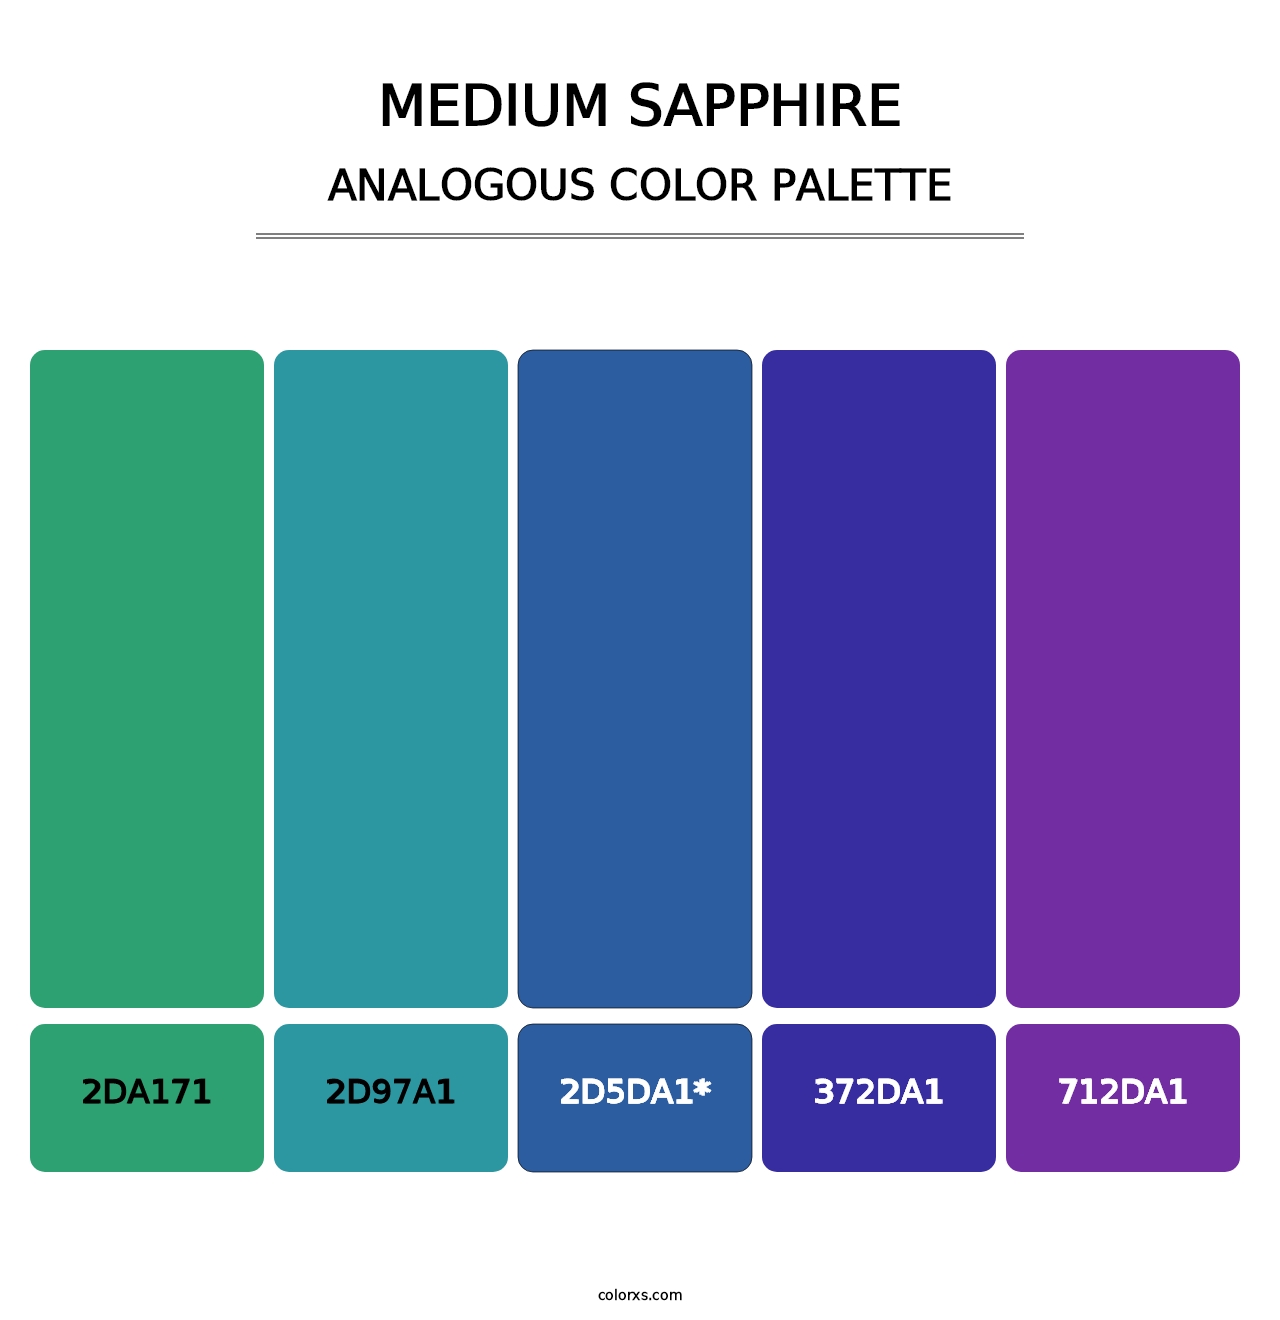 Medium Sapphire - Analogous Color Palette